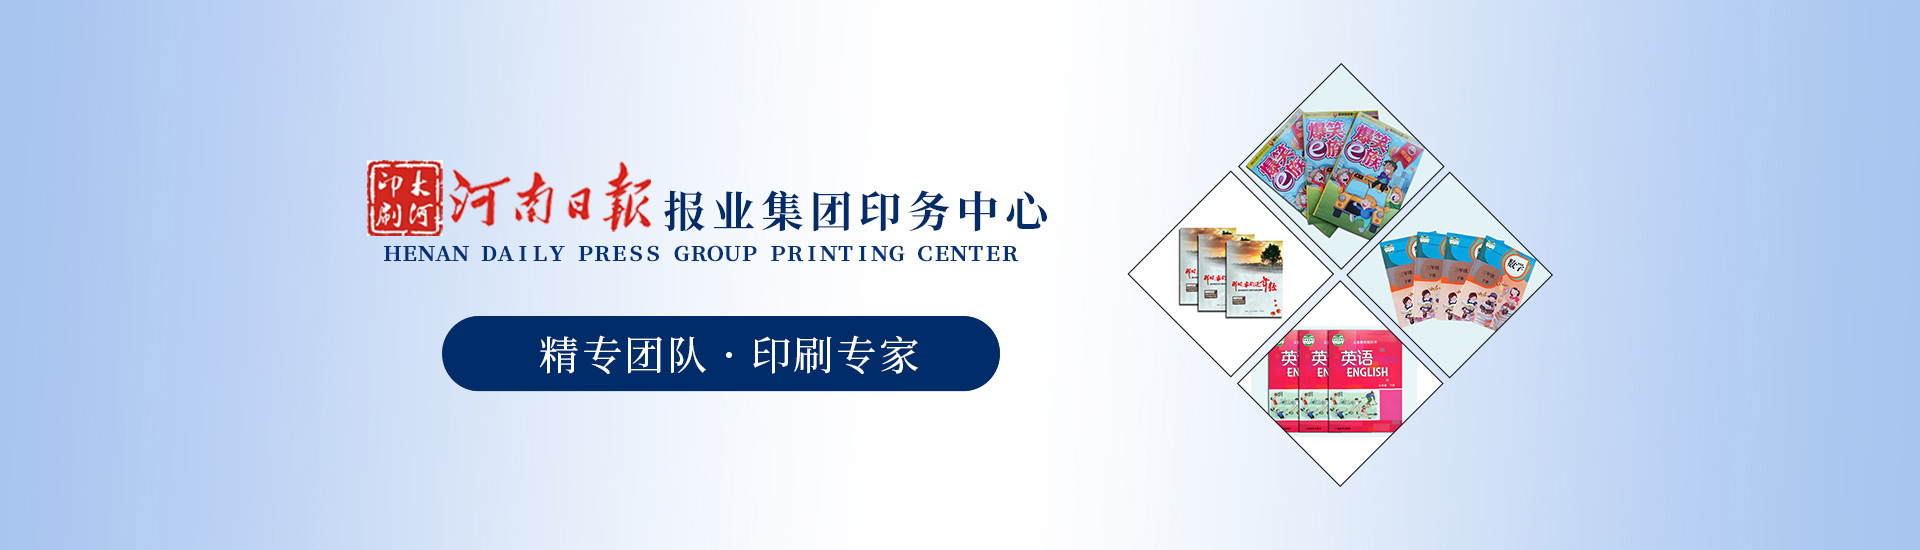 报纸印刷厂-图书印刷-教材印刷-印刷画册-郑州印刷厂-河南日报印务中心